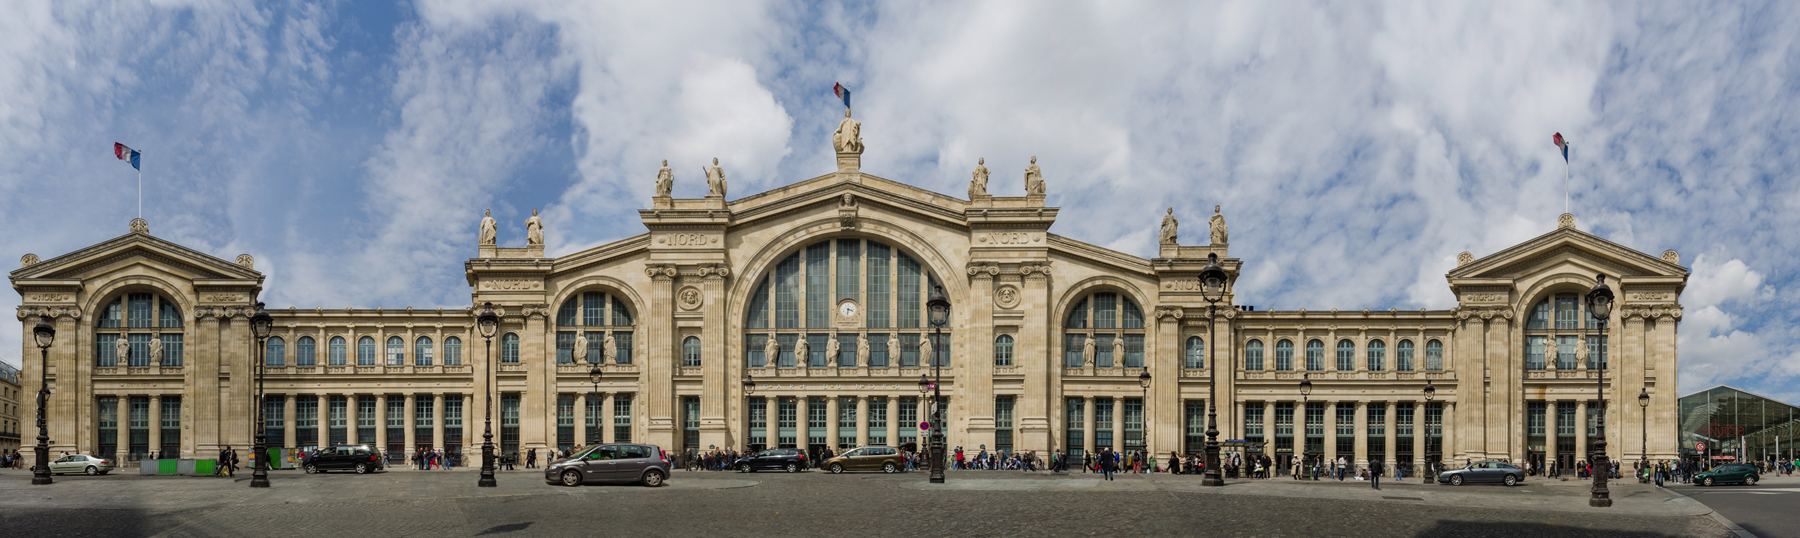 Gare parisienne